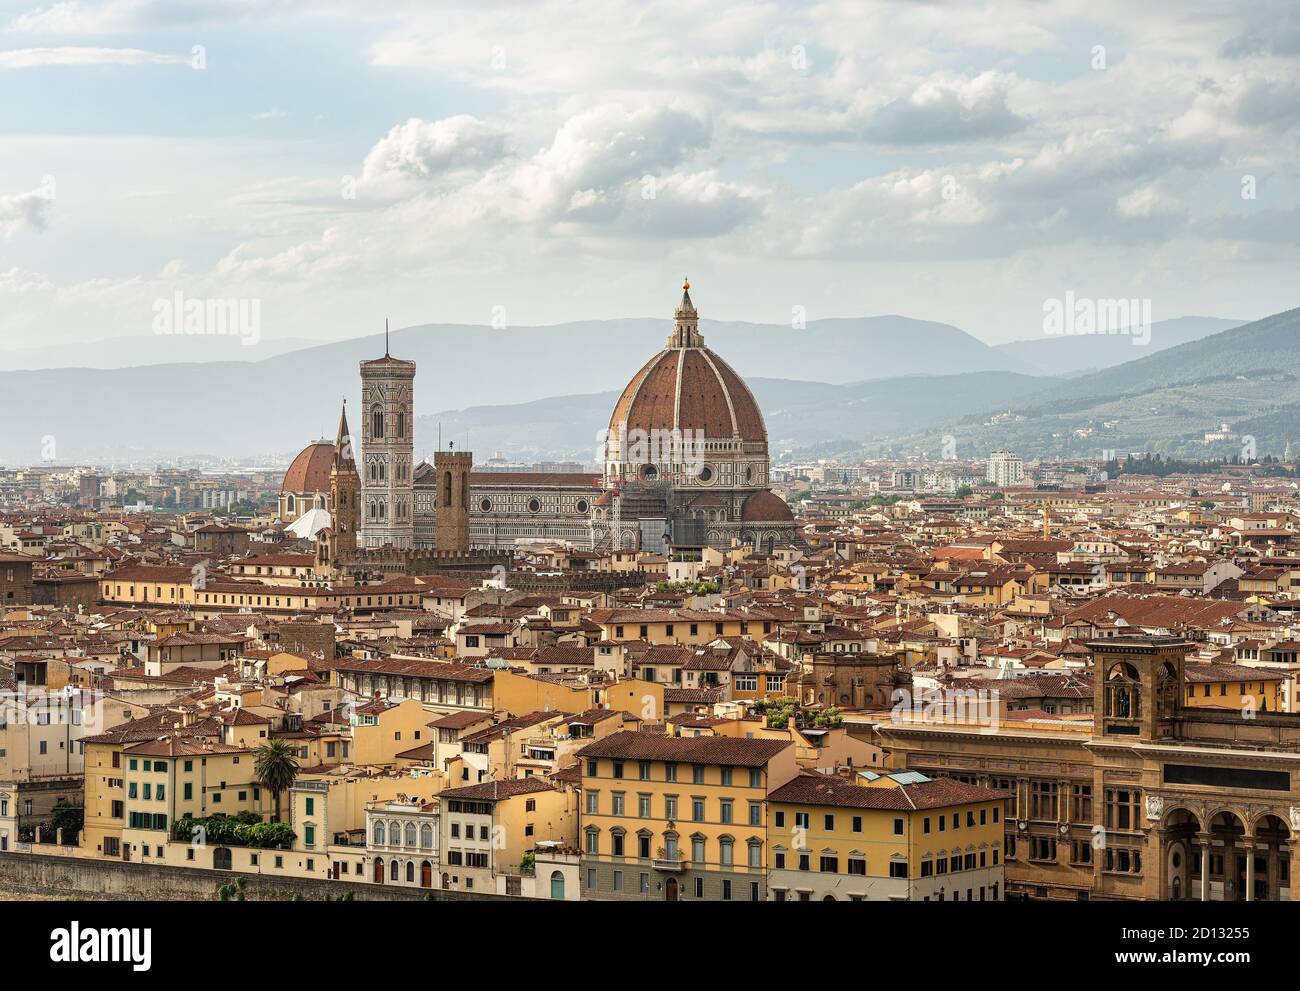 Paysage urbain de Florence avec la cathédrale, Santa Maria del Fiore et le clocher de Giotto (Campanile). Patrimoine mondial de l'UNESCO, Toscane, Italie. Banque D'Images